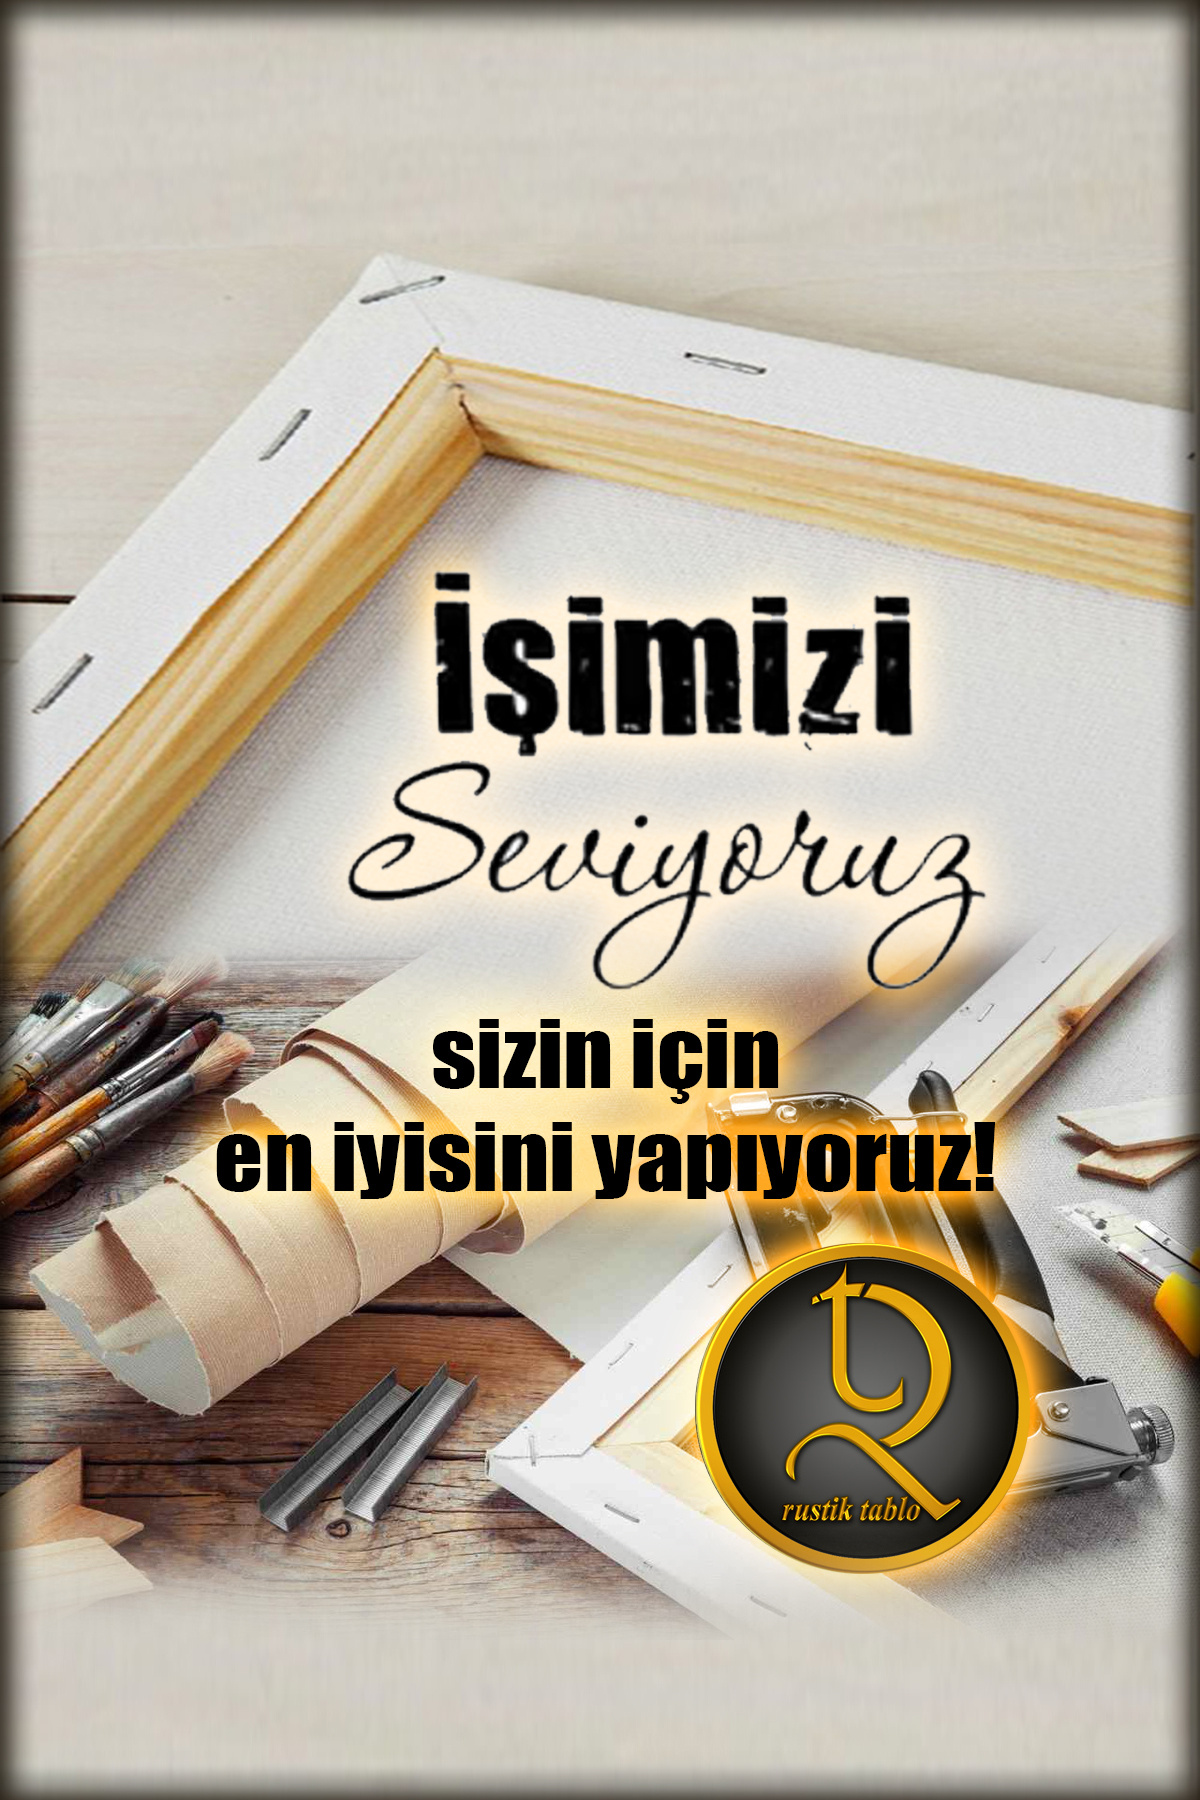 CLZ104 Atatürk Kanvas Tabloları  (70 x 50) cm